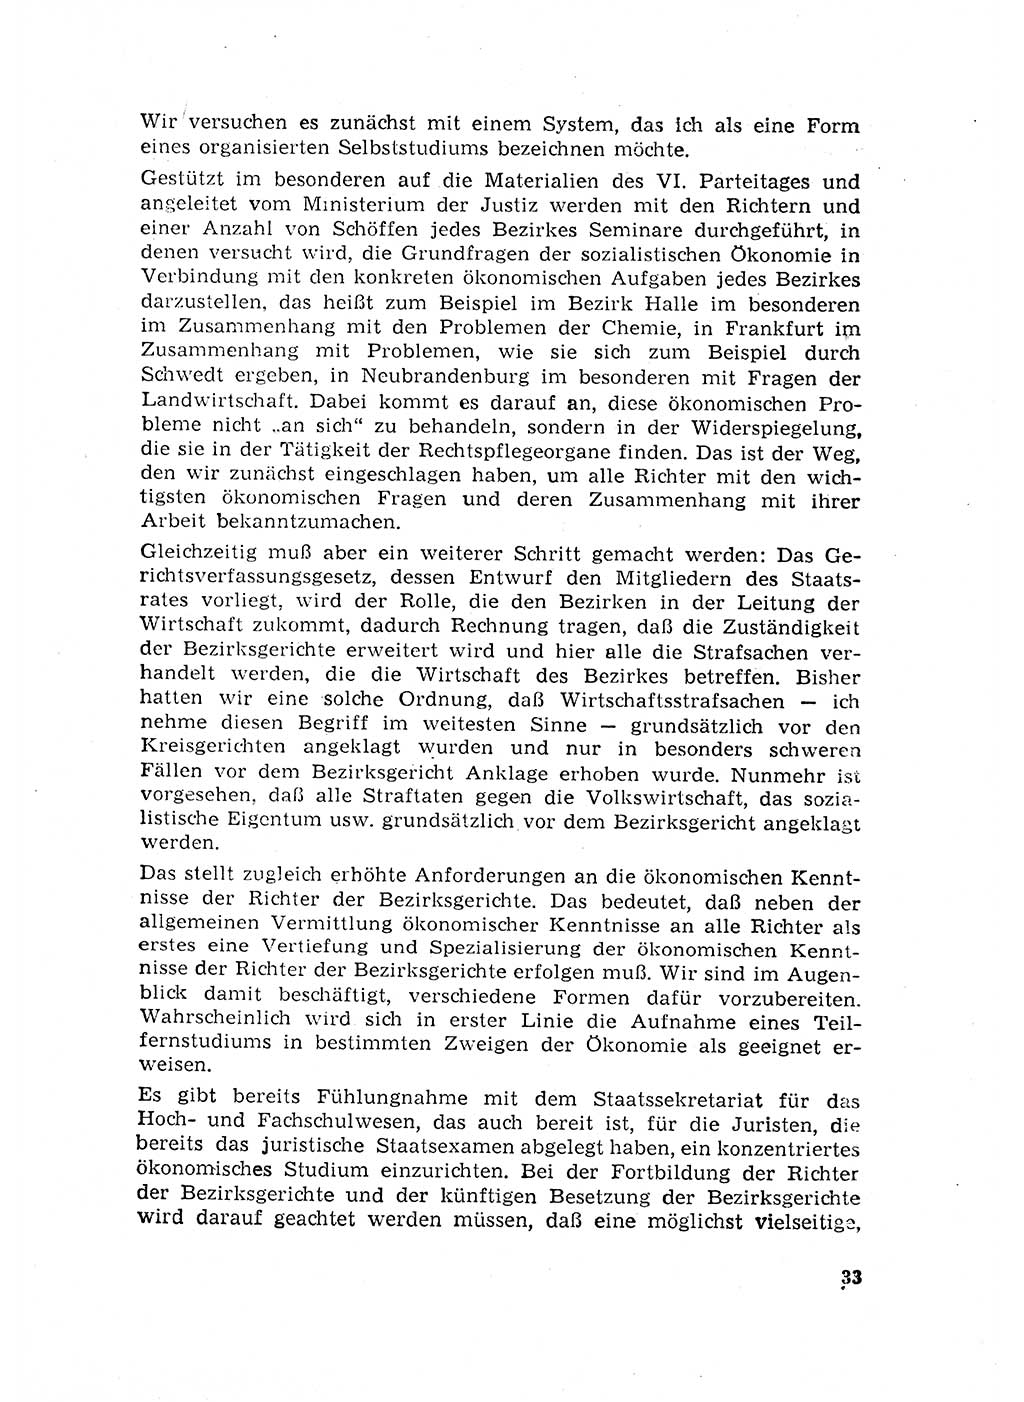 Rechtspflegeerlaß [Deutsche Demokratische Republik (DDR)] 1963, Seite 33 (R.-Pfl.-Erl. DDR 1963, S. 33)